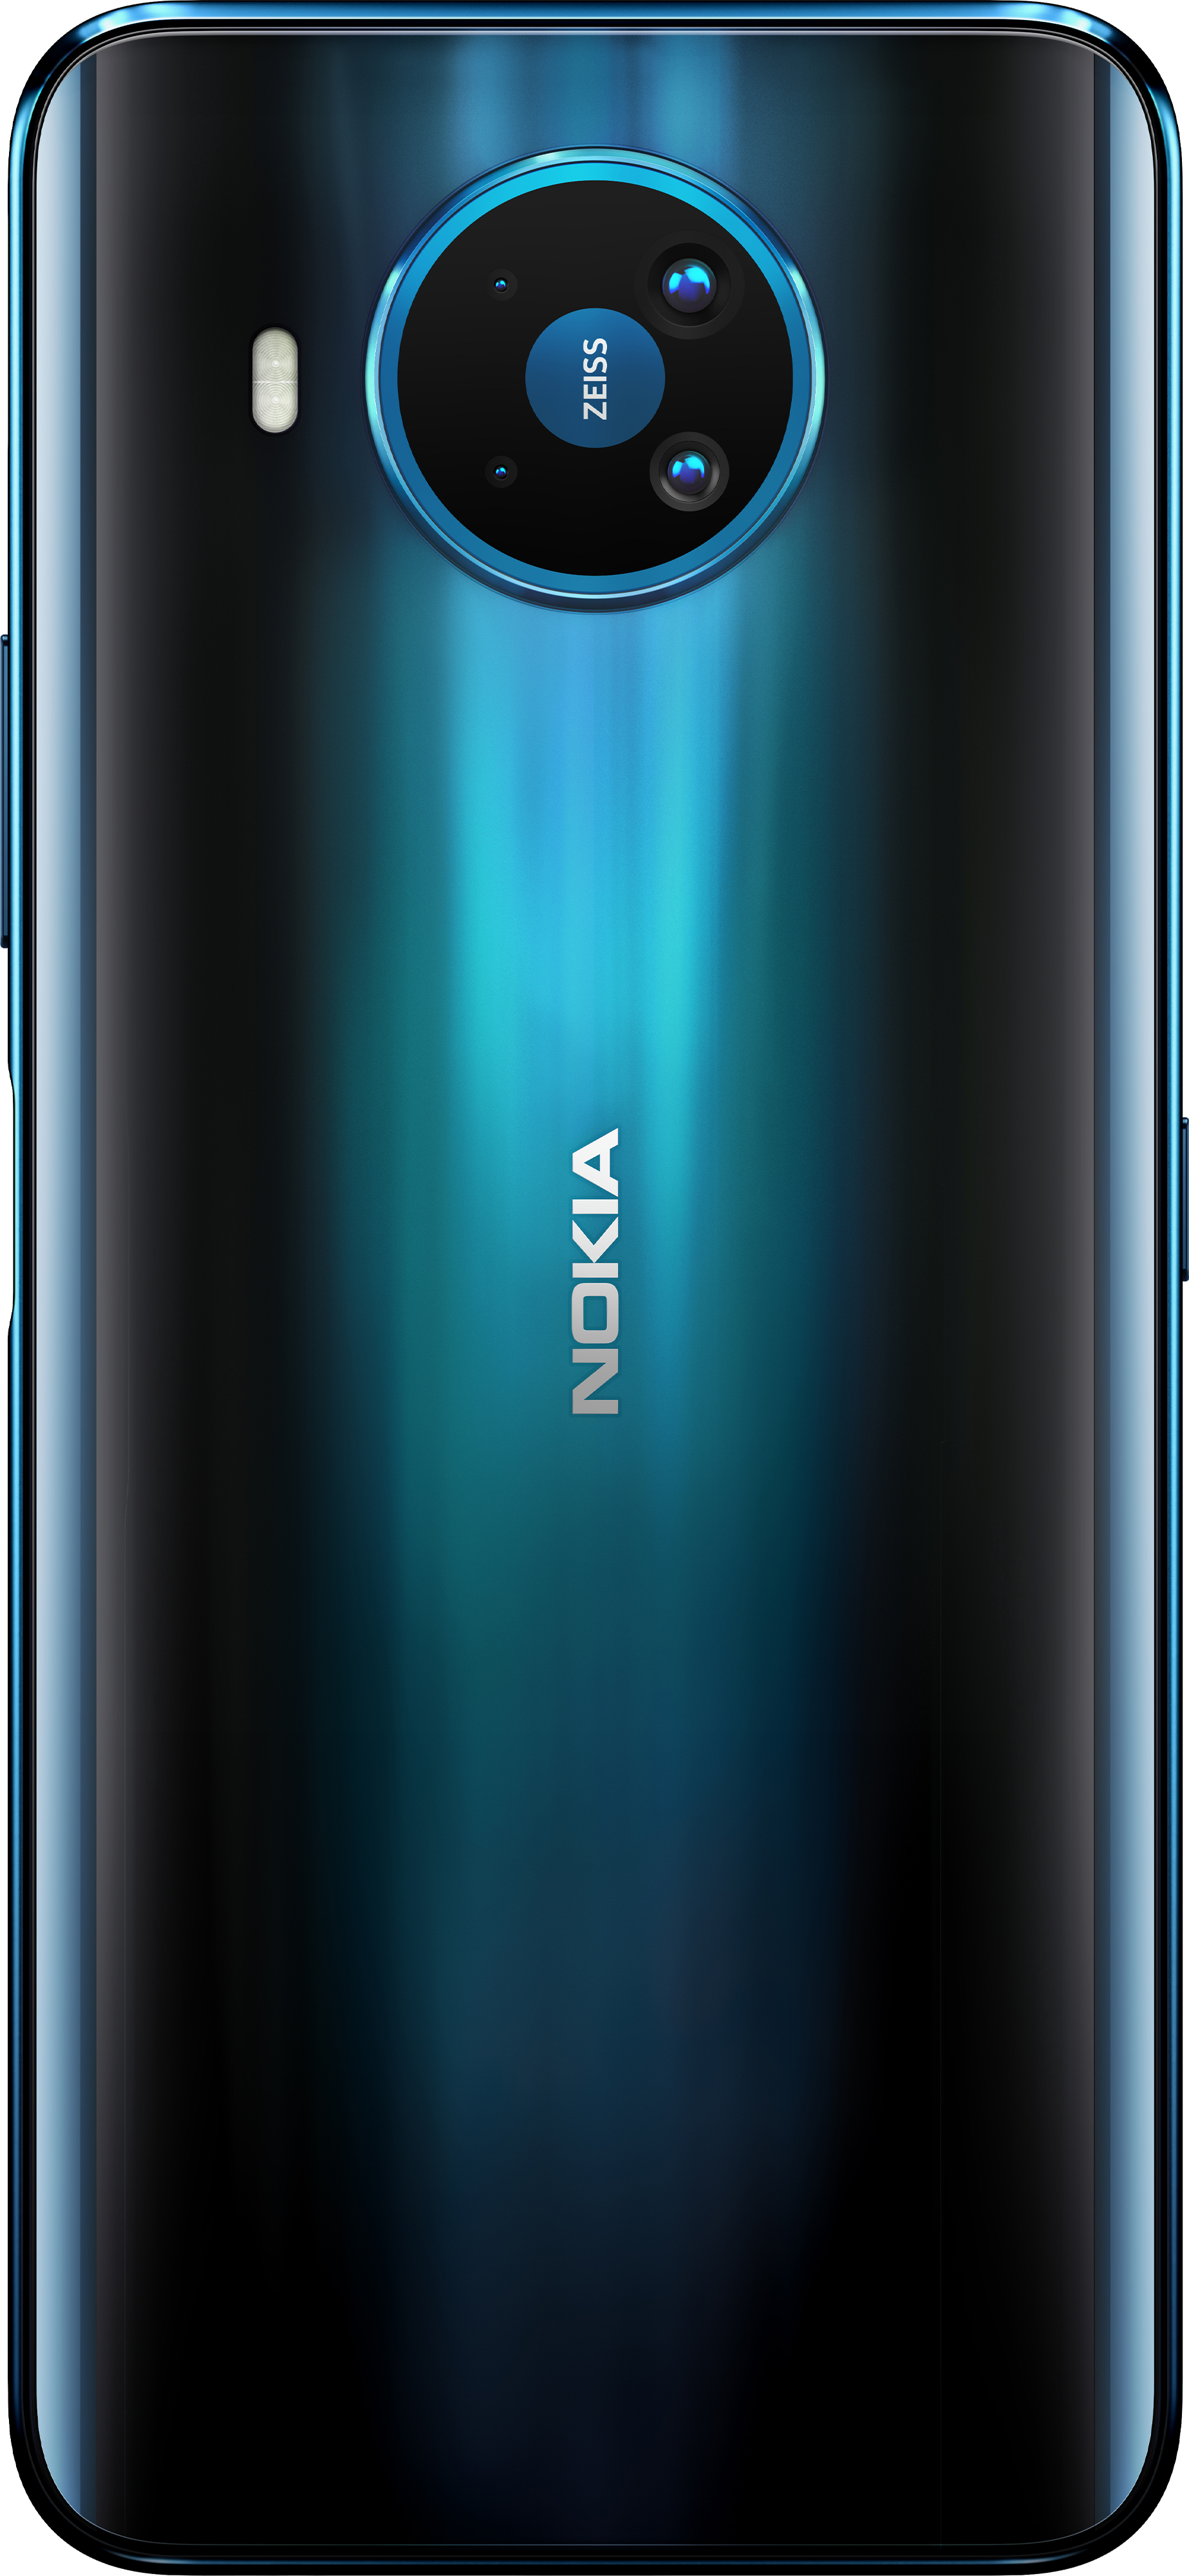 Nokia 8 3 5g Smartphone With 64mp Quad Camera